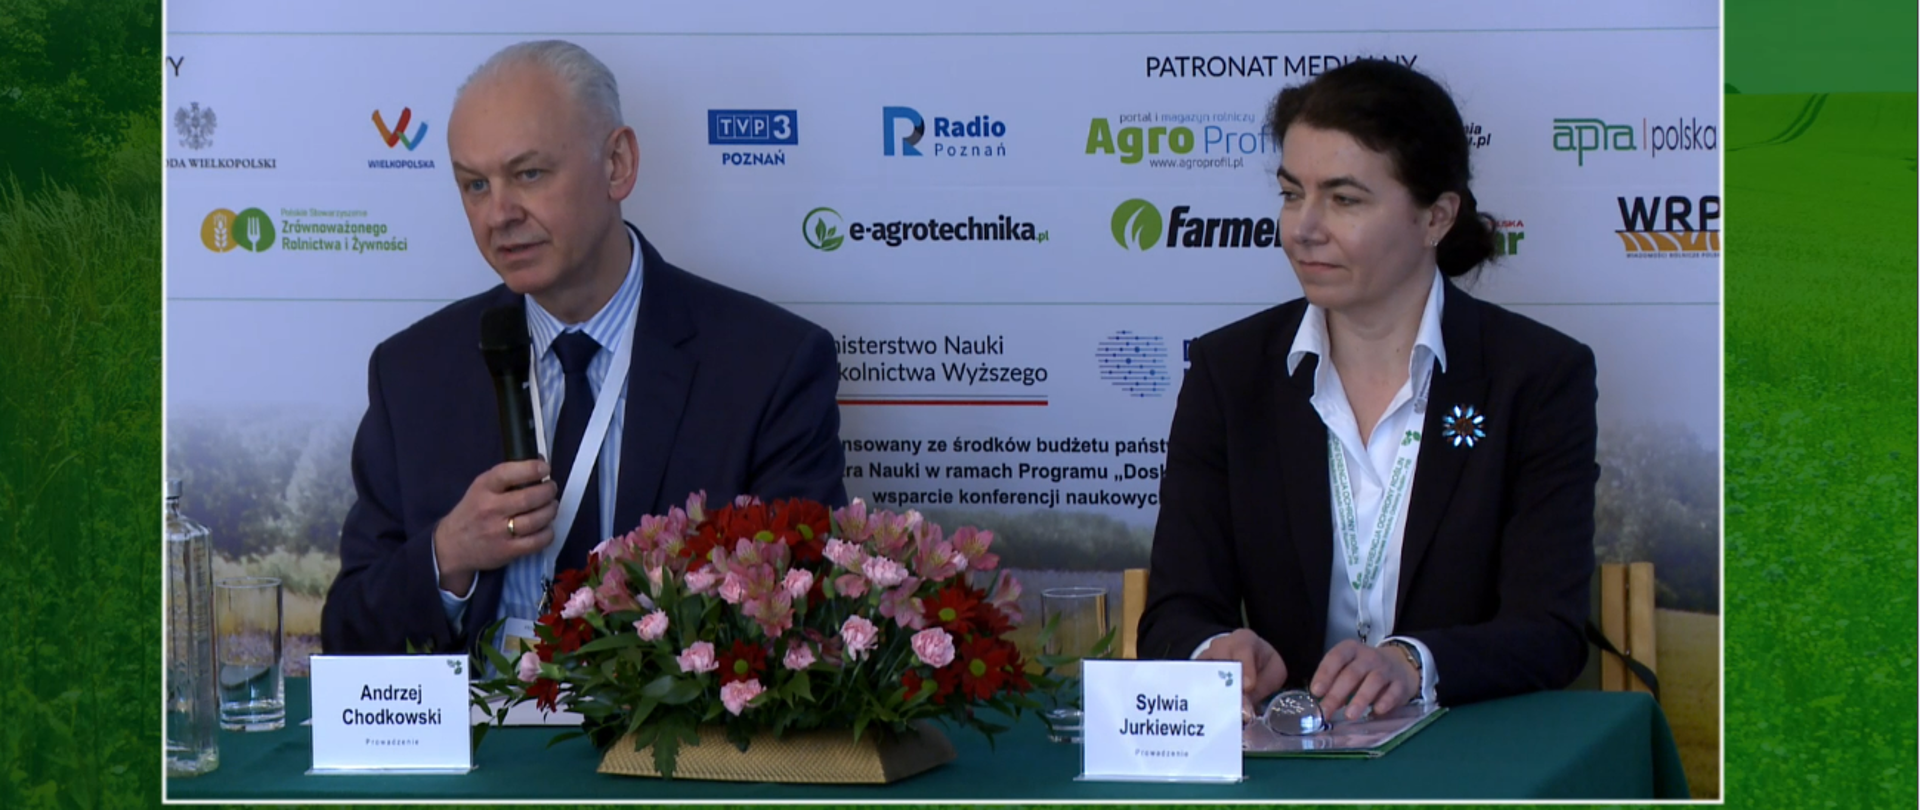 Moderatorzy panelu PIORiN – Andrzej Chodkowski i Sylwia Jurkiewicz
